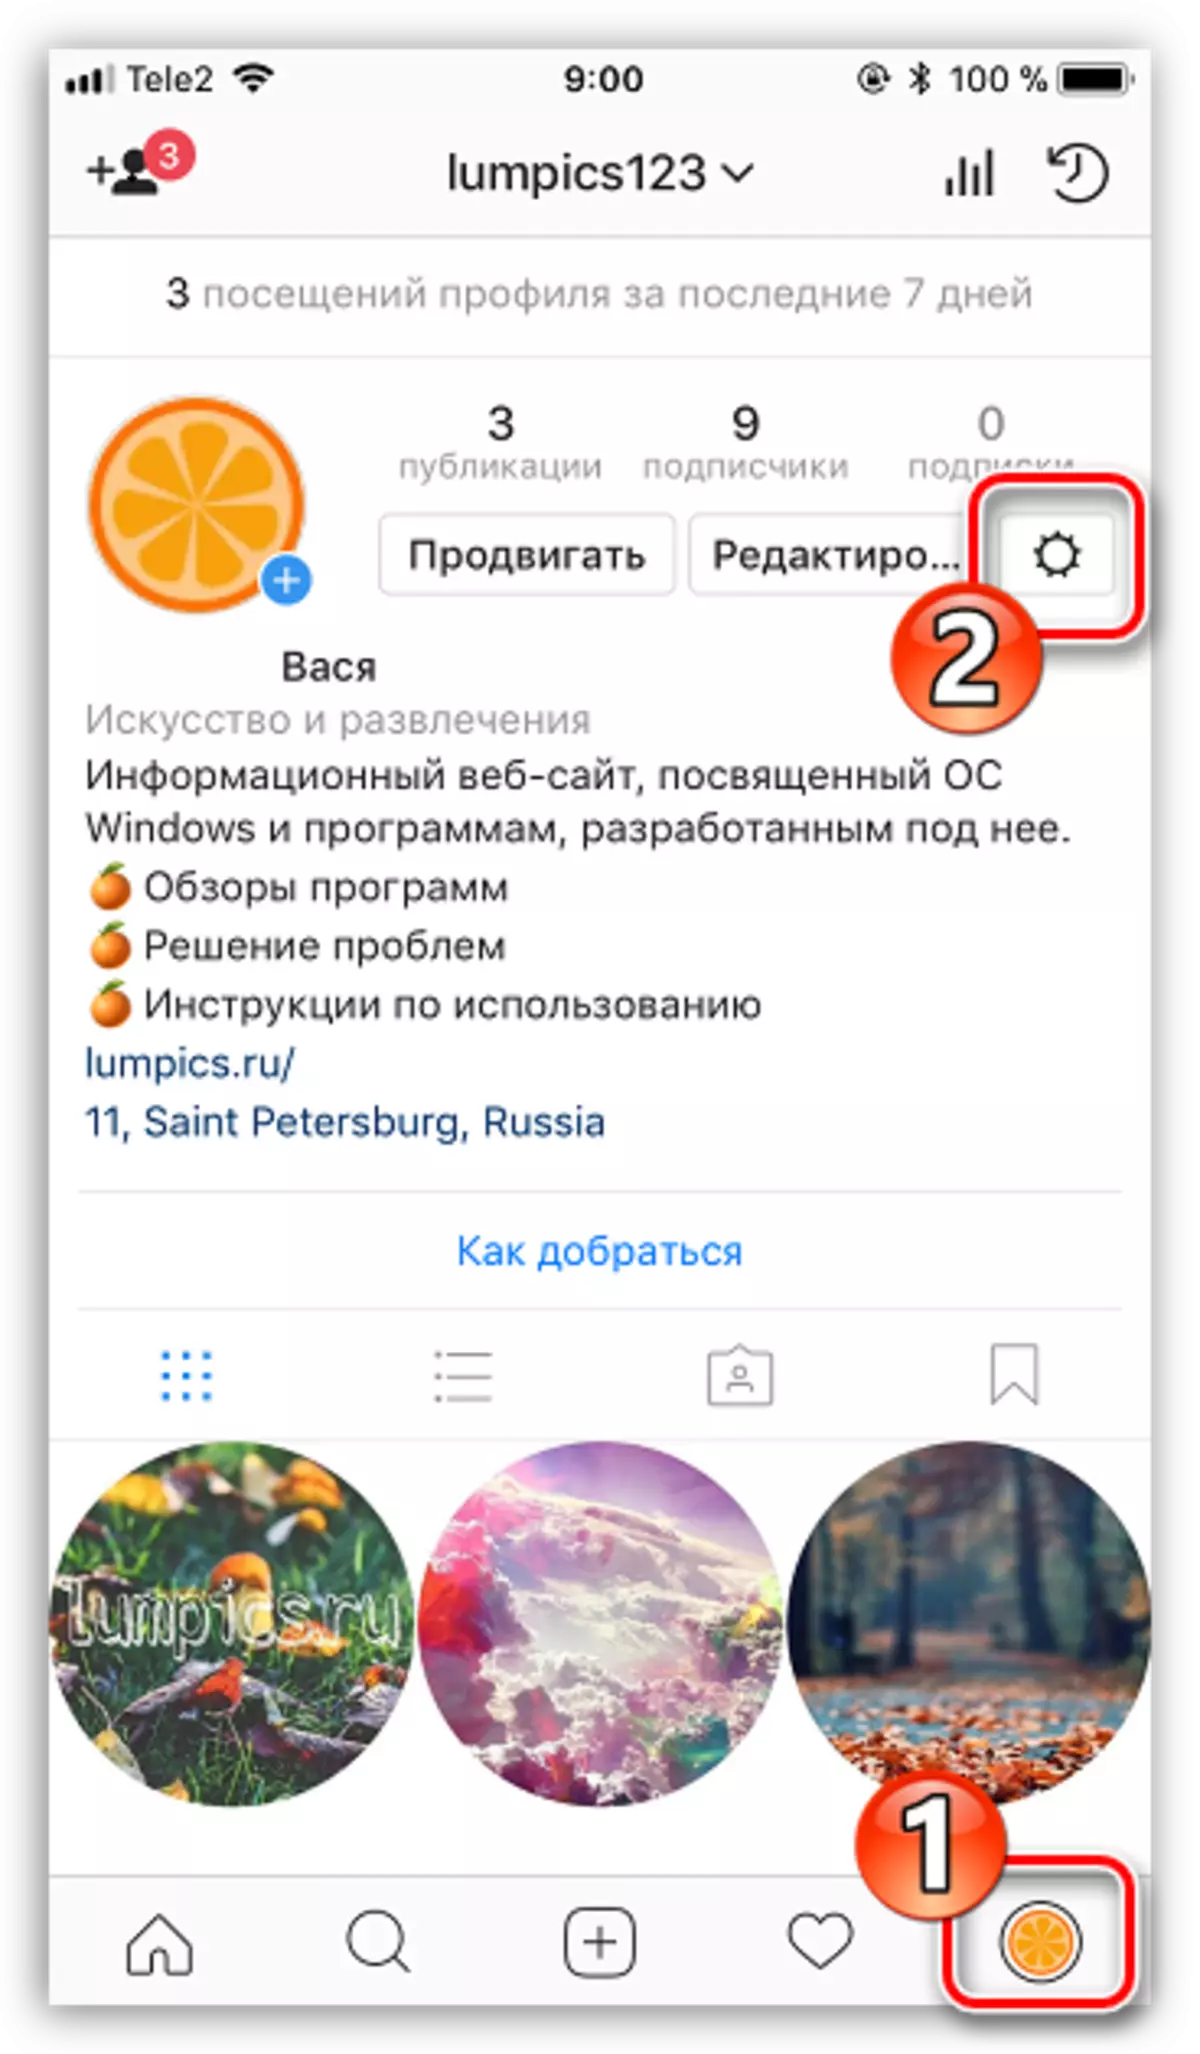 Instagram એપ્લિકેશનમાં સેટિંગ્સ પર જાઓ